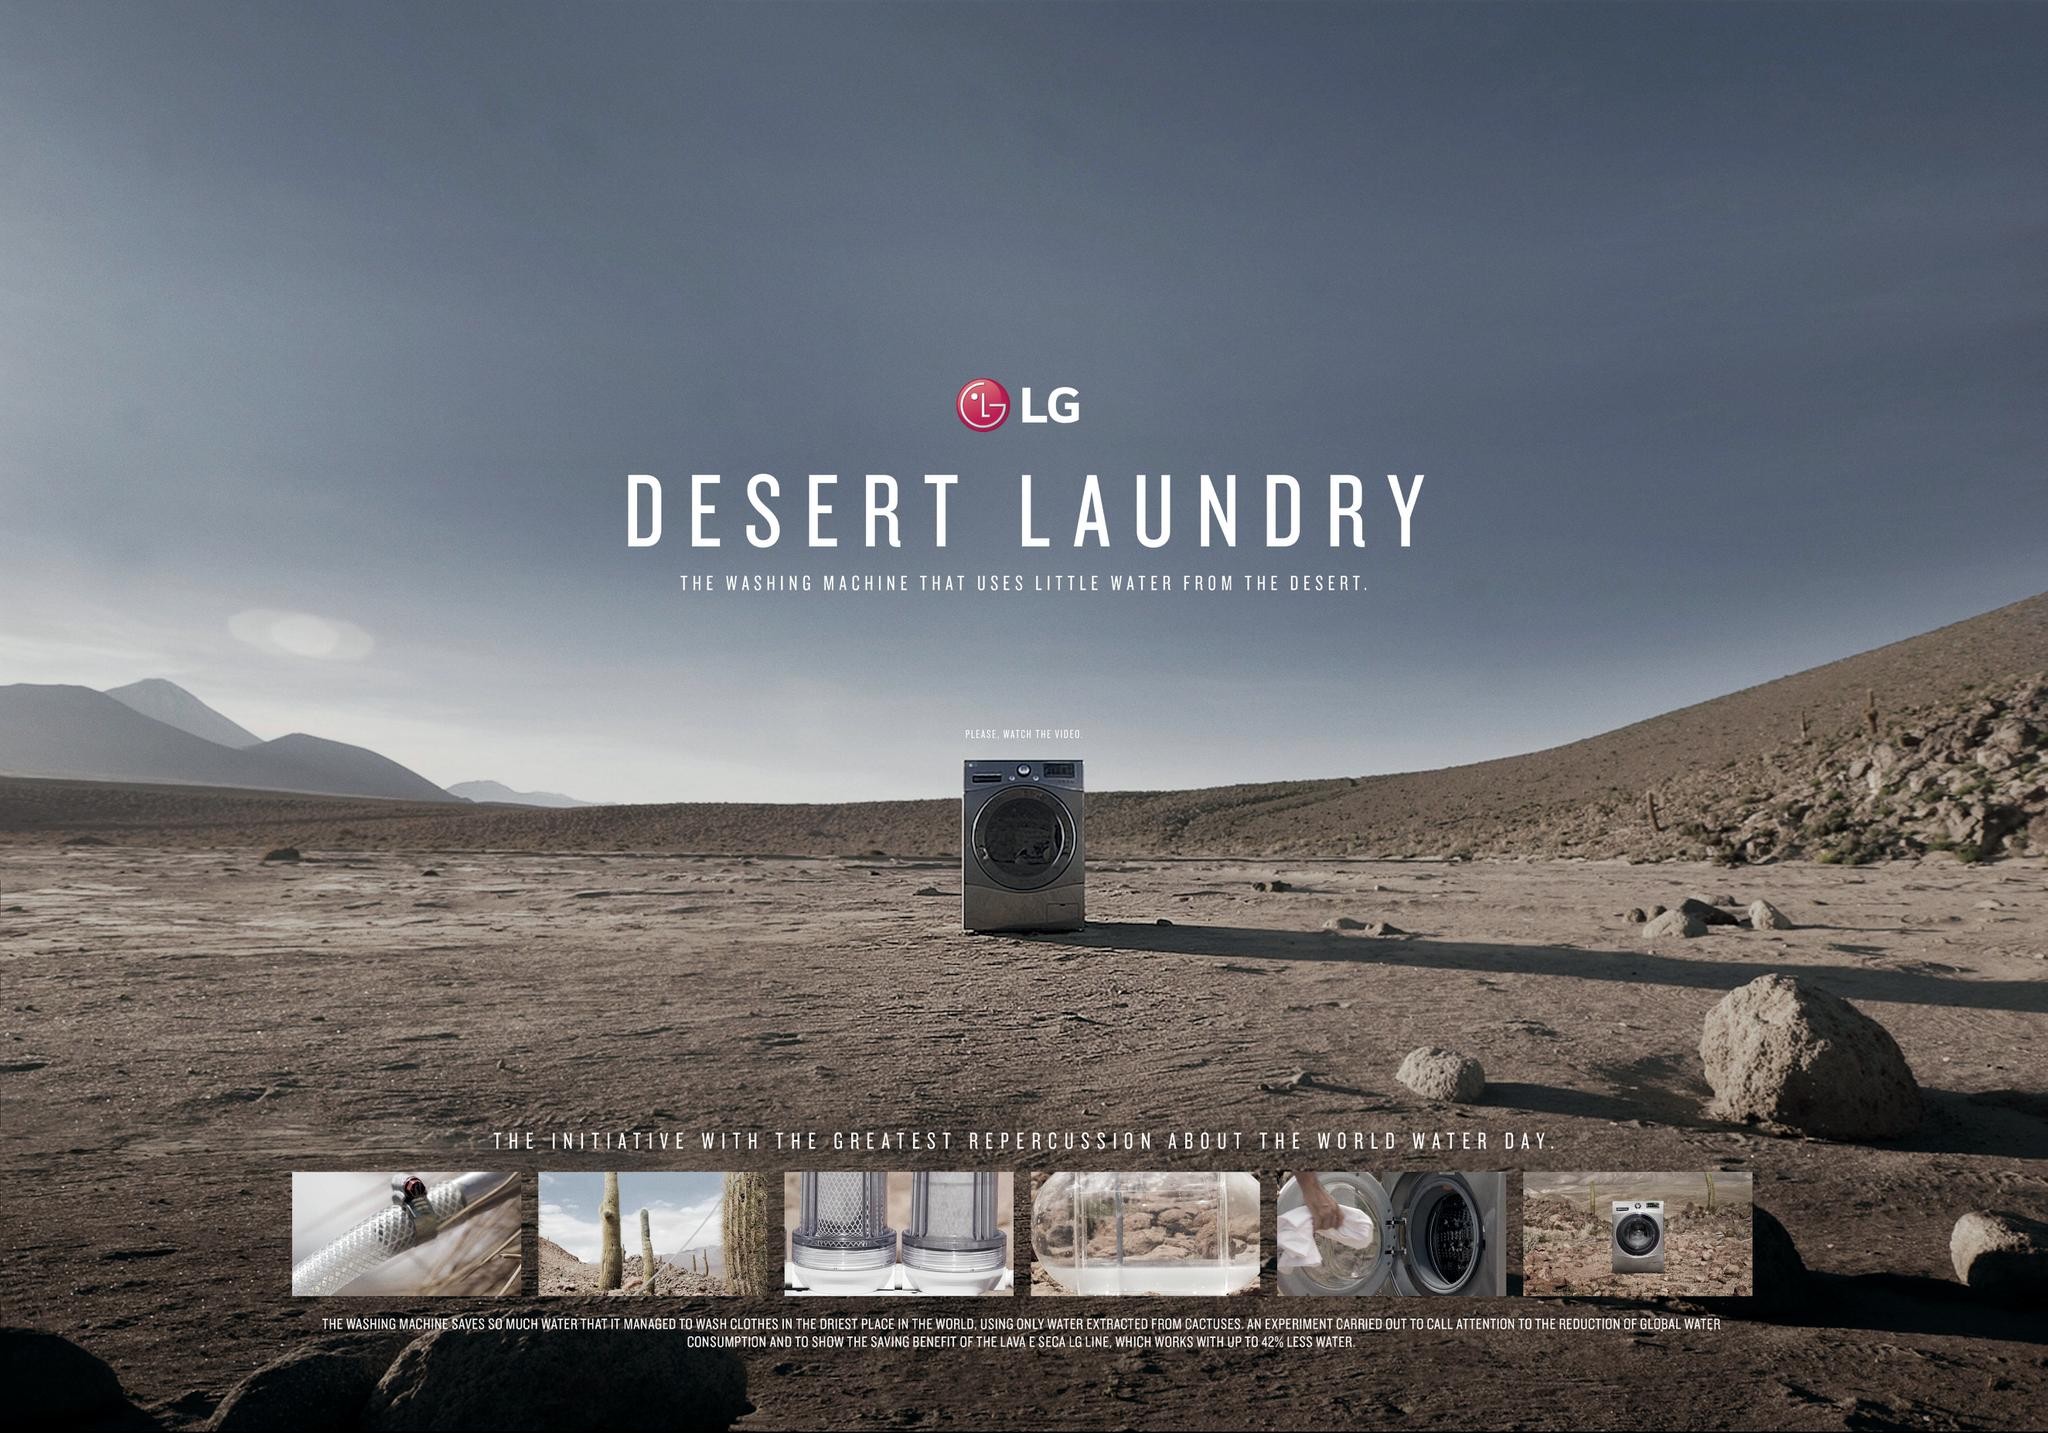 The Desert Laundry